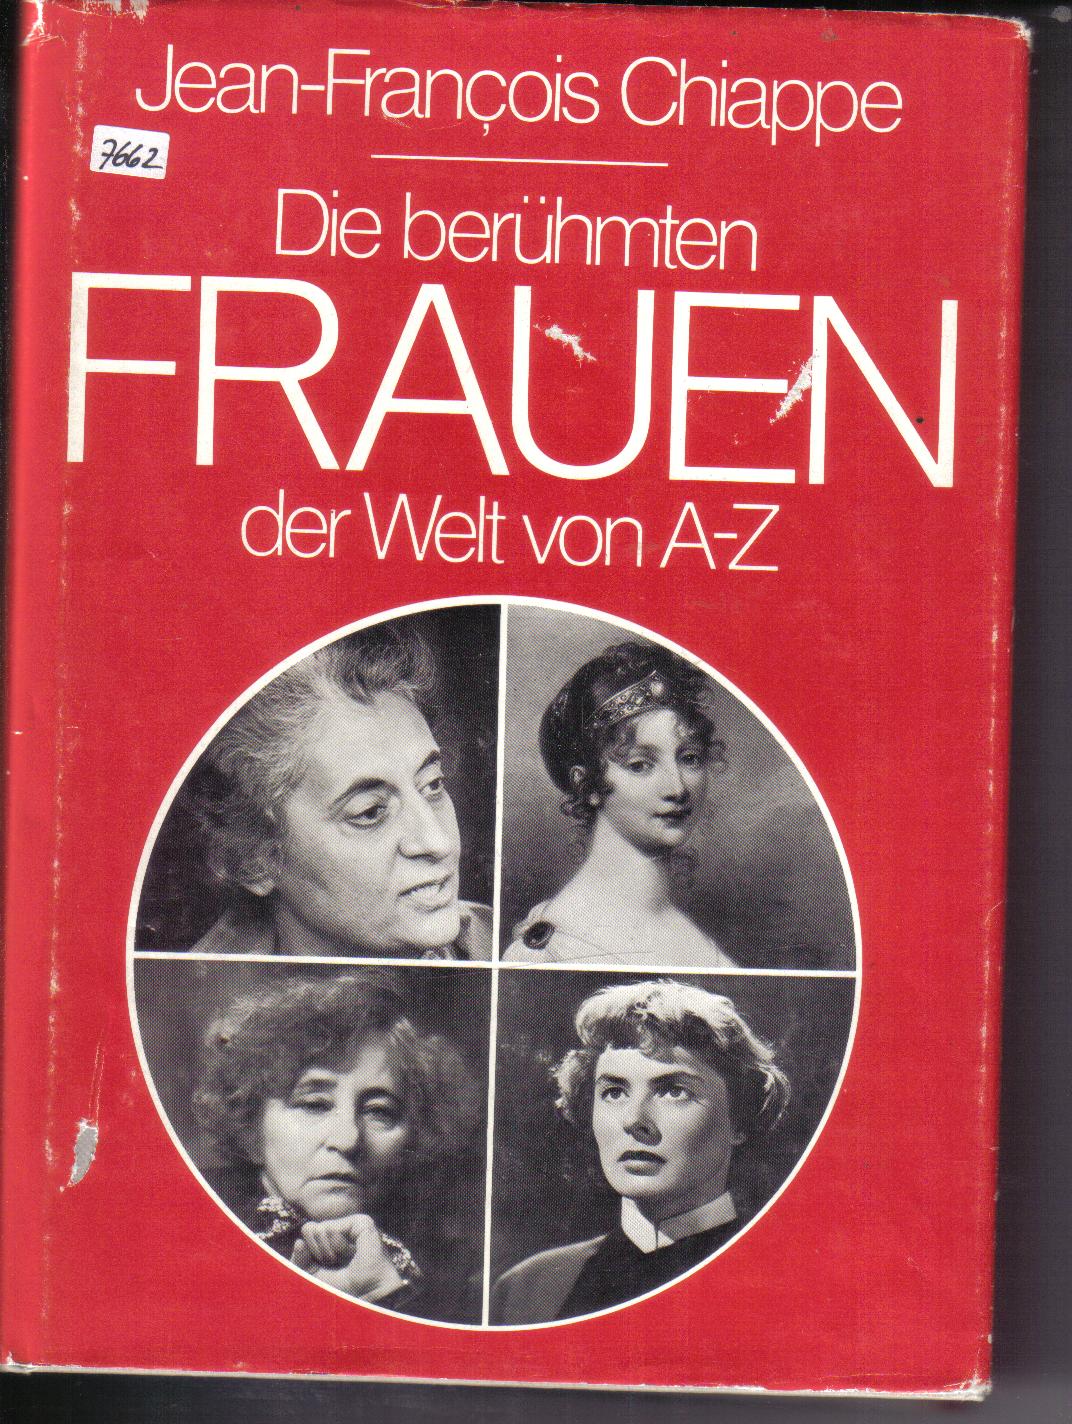 Die beruehmten Frauen der Welt von A- Z Chiappe, Jean-Francois (Hrsg.)